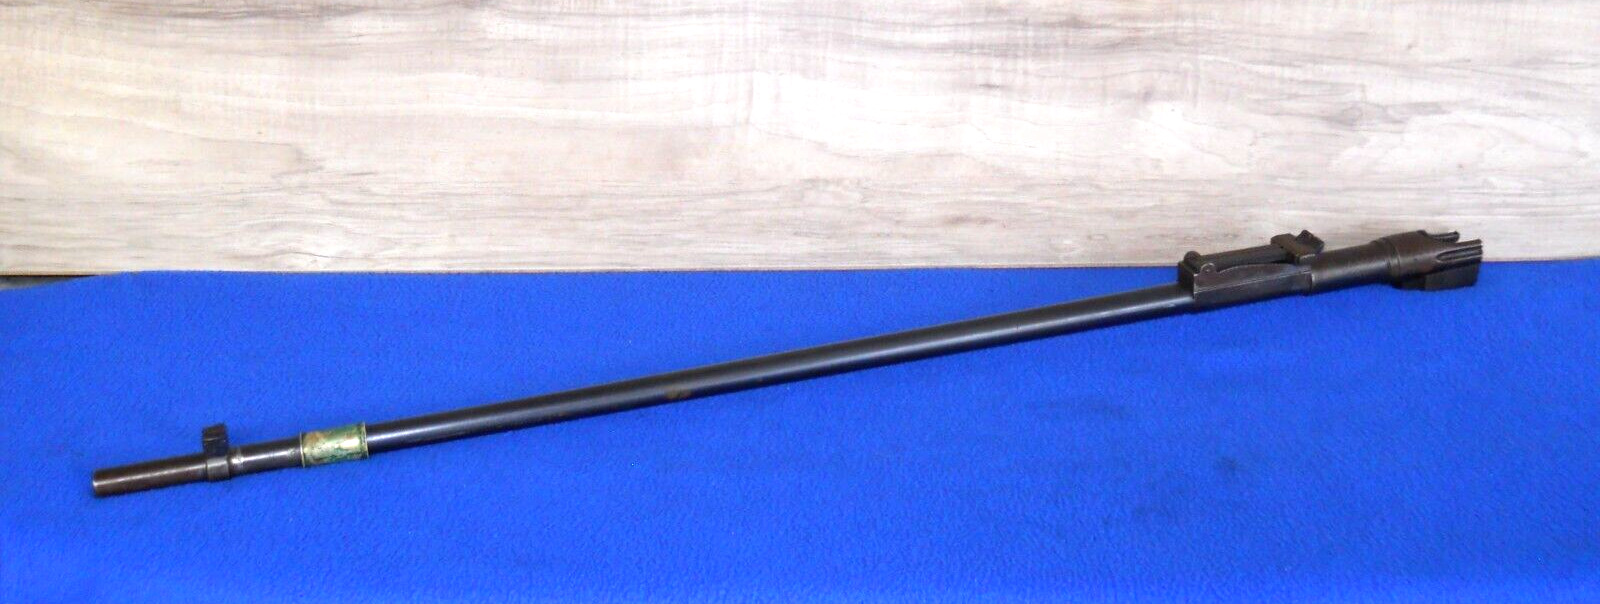 Swiss Schmidt Rubin Rifle 1896/11  7.5  BARREL w/ FRONT & REAR SIGHTS #TG5026